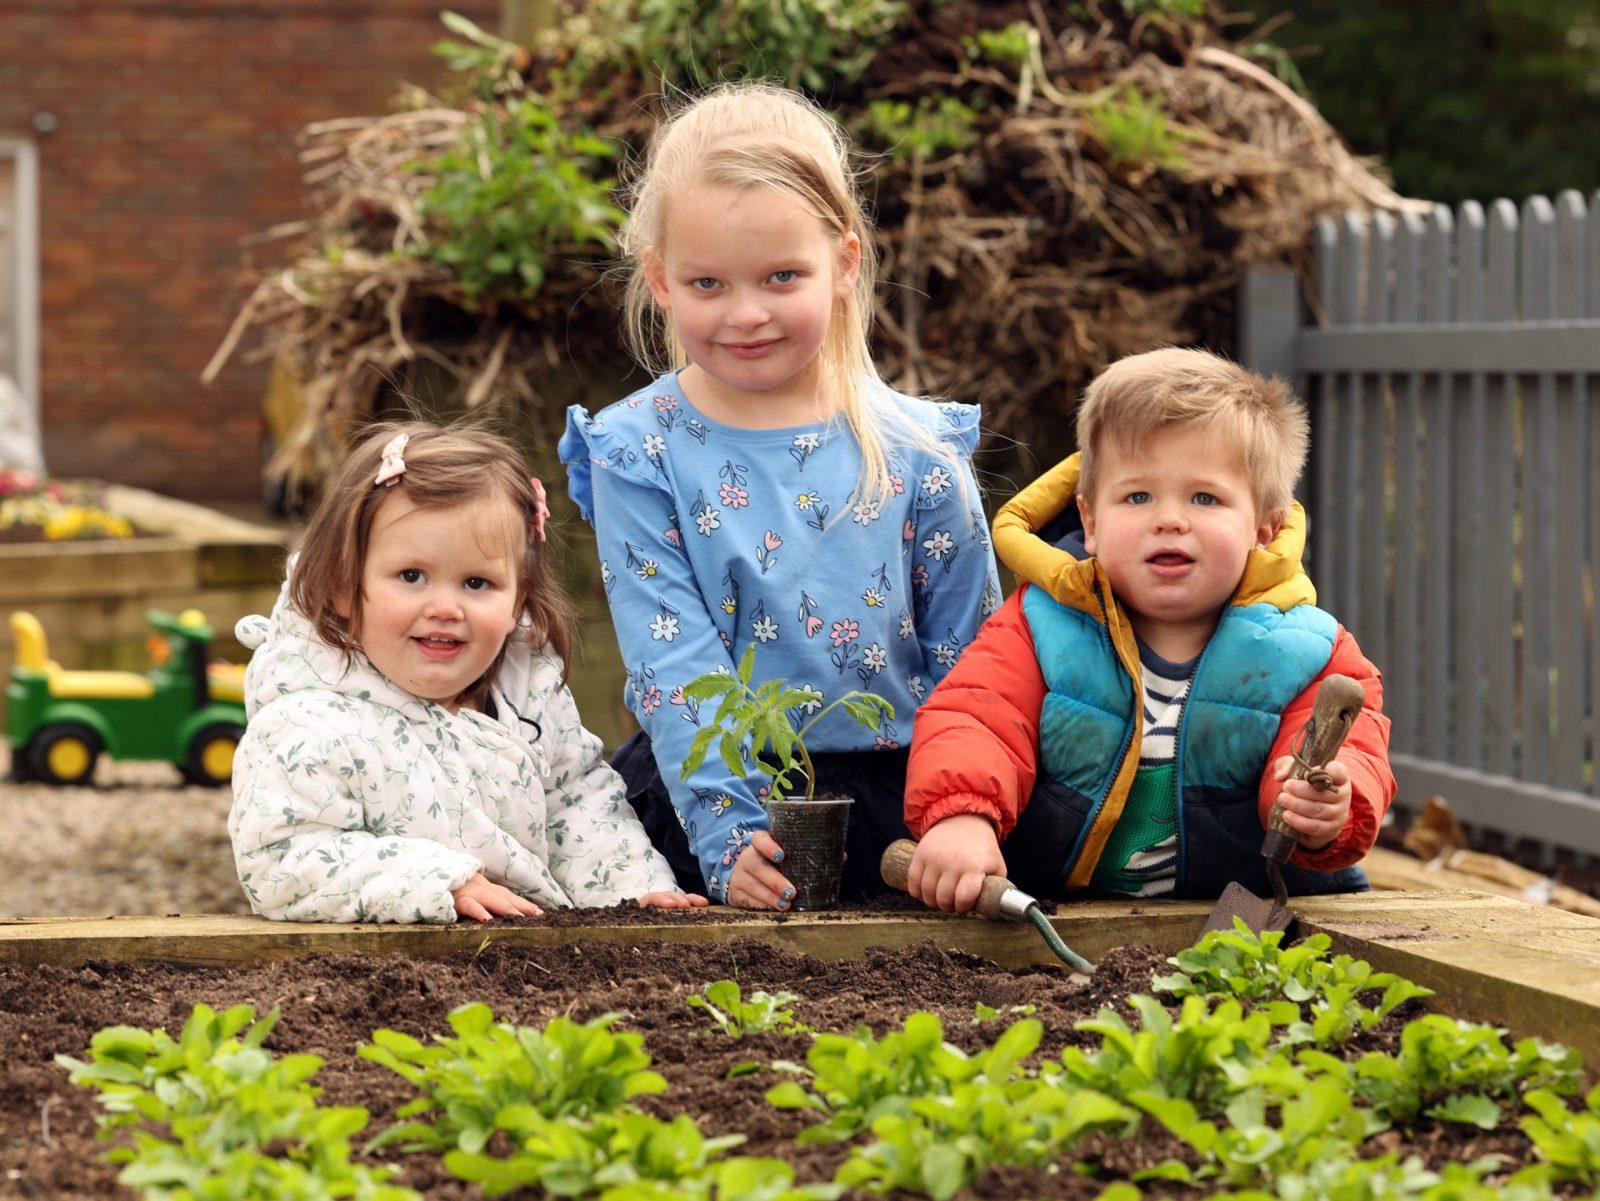 Children enjoy gardening event